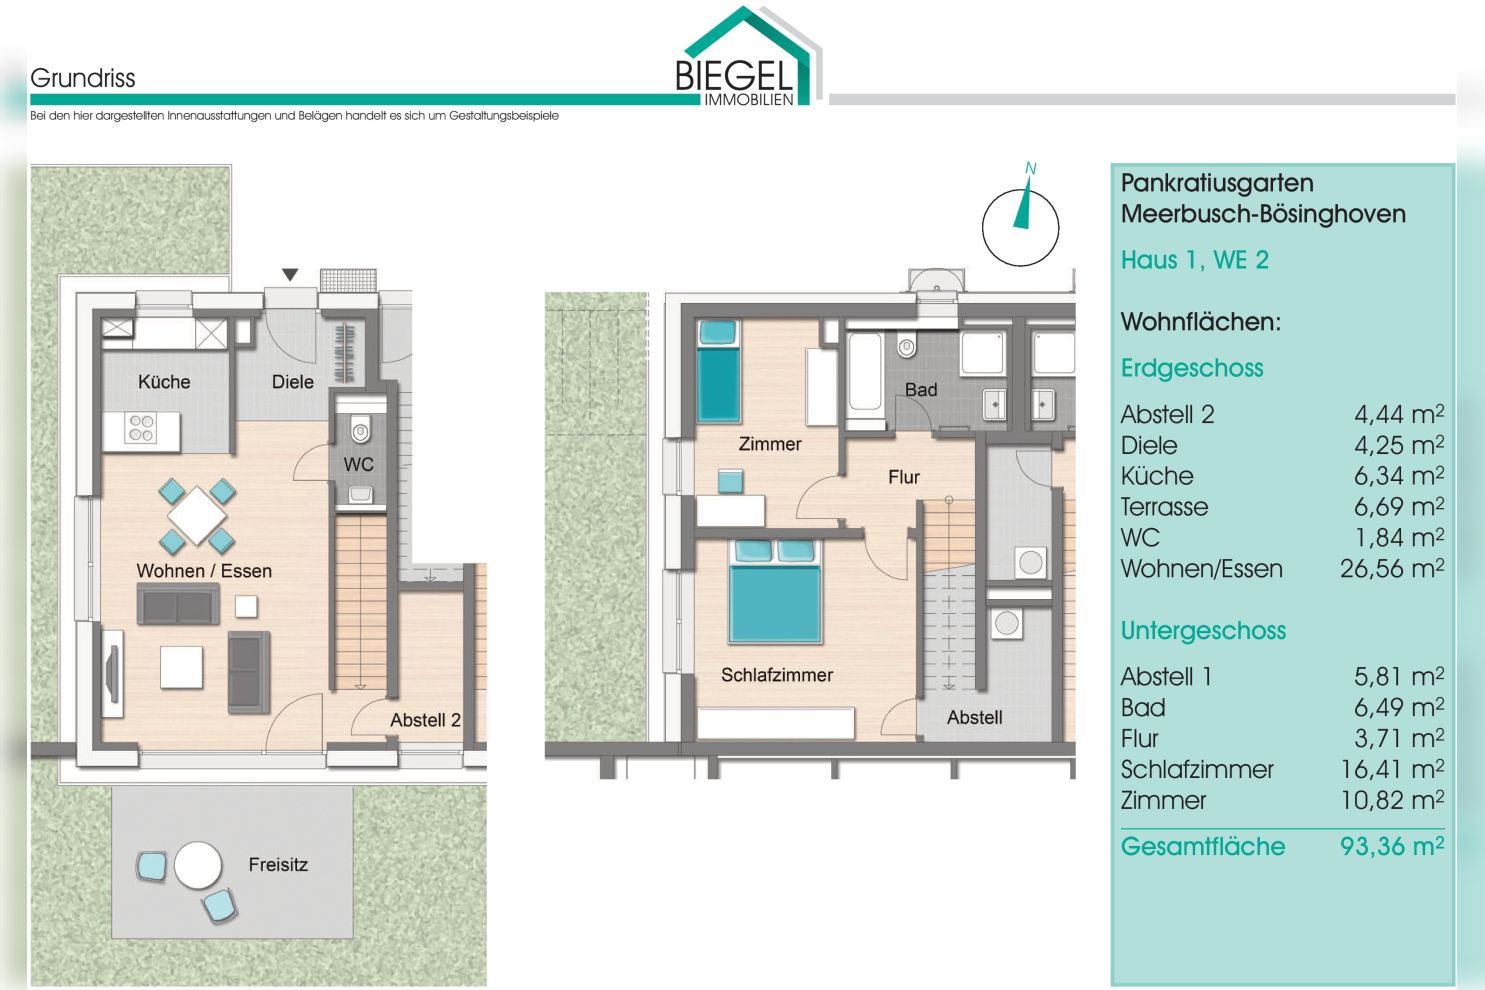 Immobilie Nr.BÖ-01.2 - BÖ-01.2;  3-Raum-Wohnung über EG und Sout., Terrasse u. Garten - Bild 15.jpg